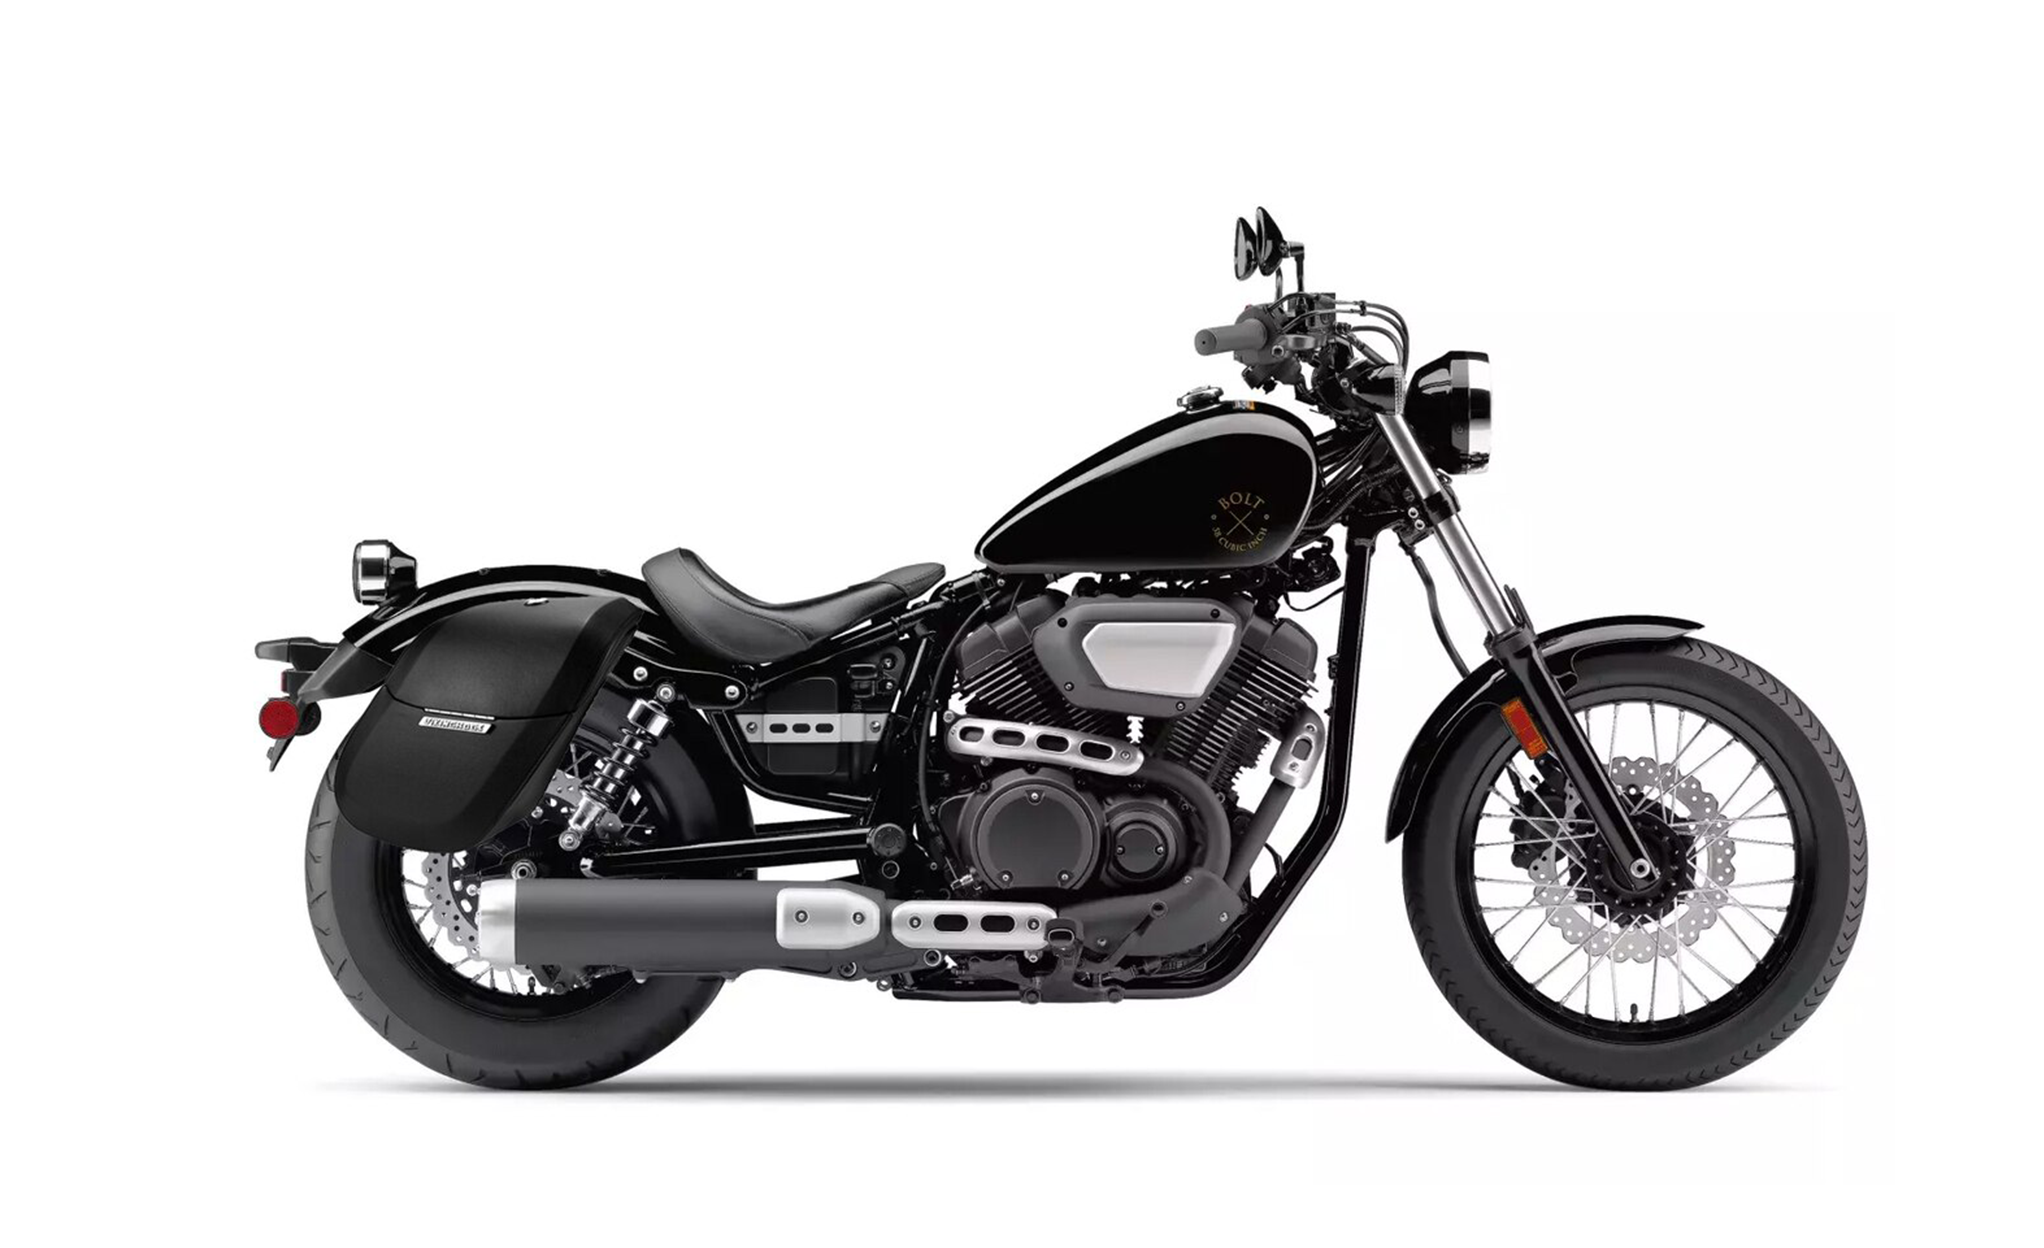 Viking Drifter Medium Yamaha Bolt Specific Leather Wrapped Motorcycle Hard Saddlebags on Bike Photo @expand